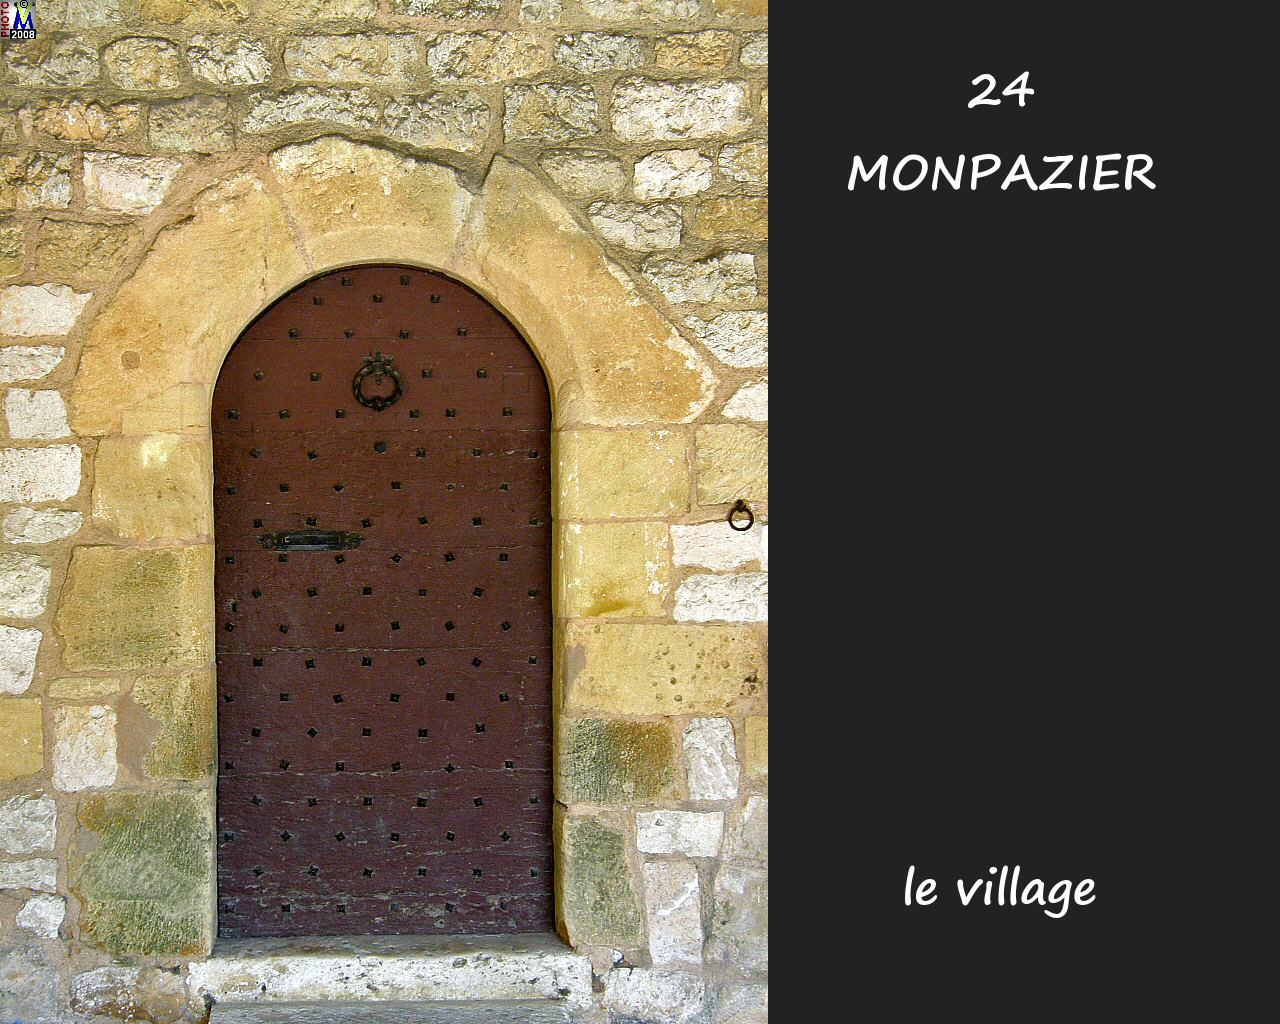 24MONPAZIER_village_184.jpg